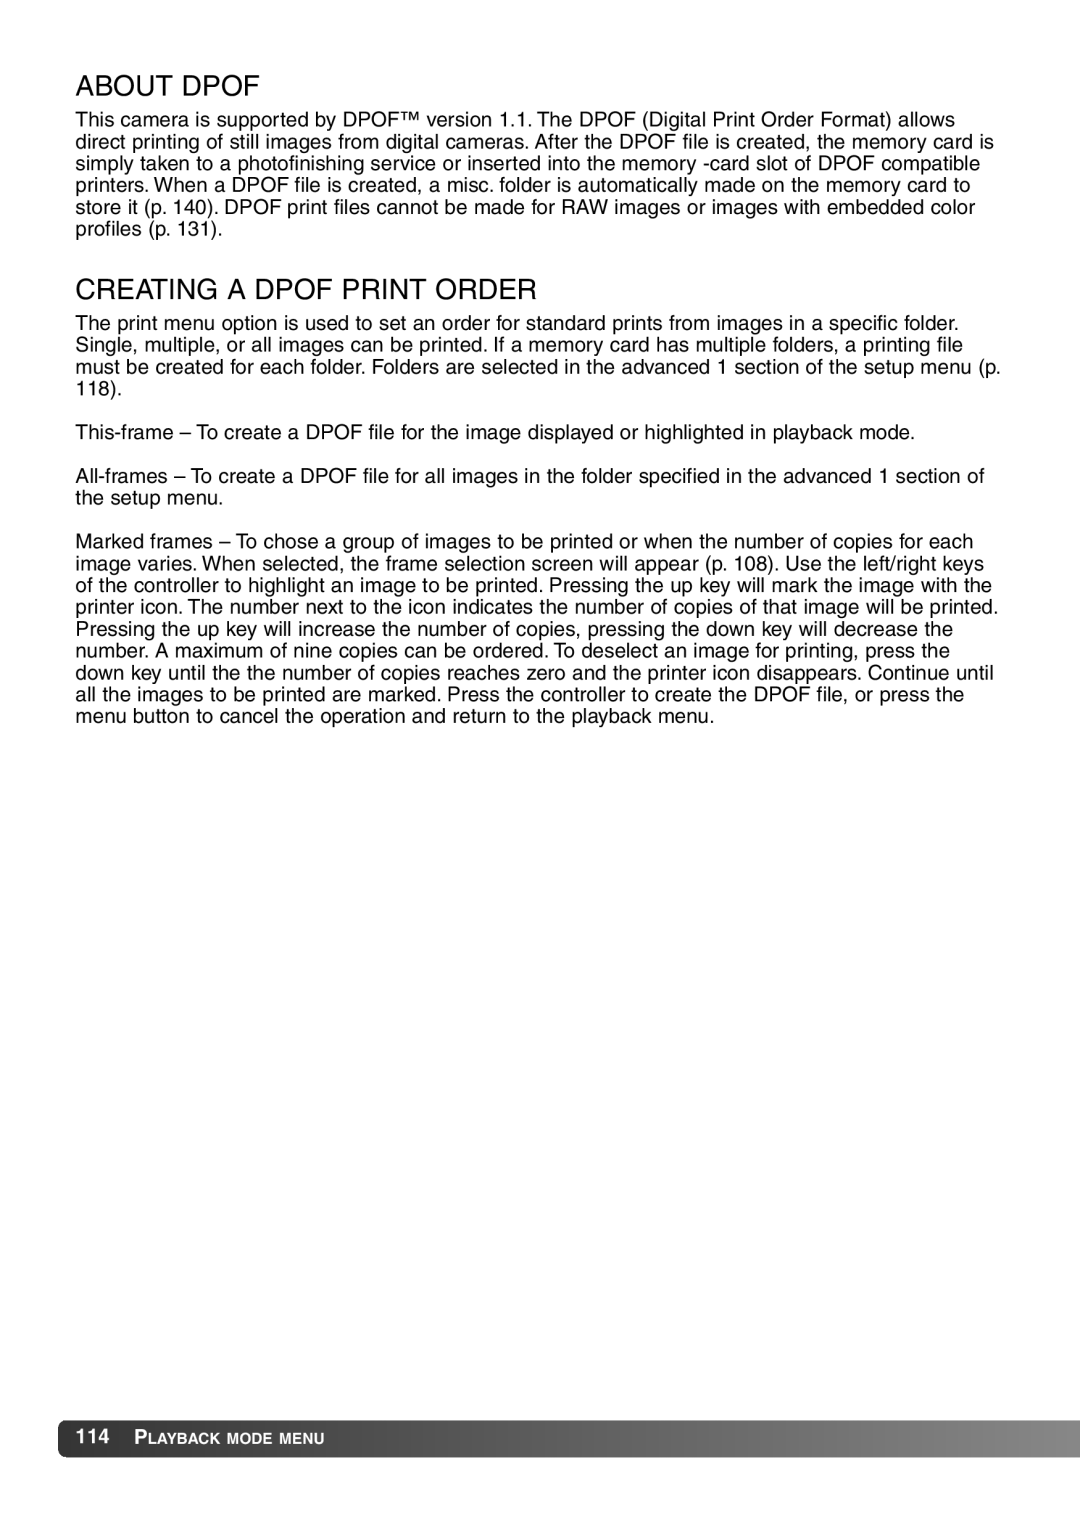 Konica Minolta 7Hi instruction manual About Dpof, Creating a Dpof Print Order 